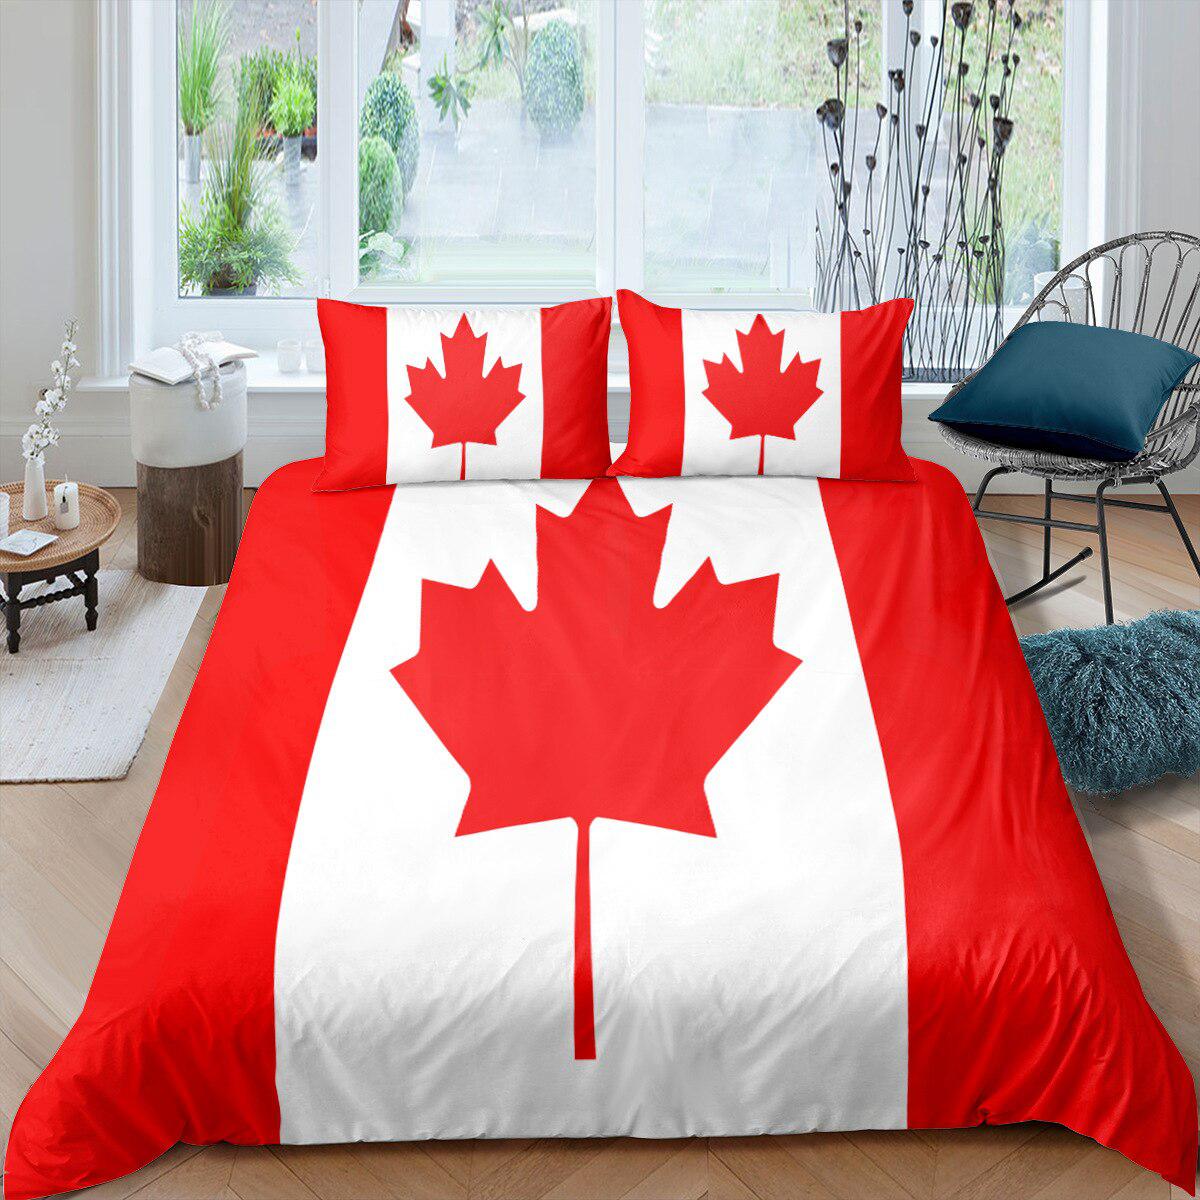 Canada flag duvet cover